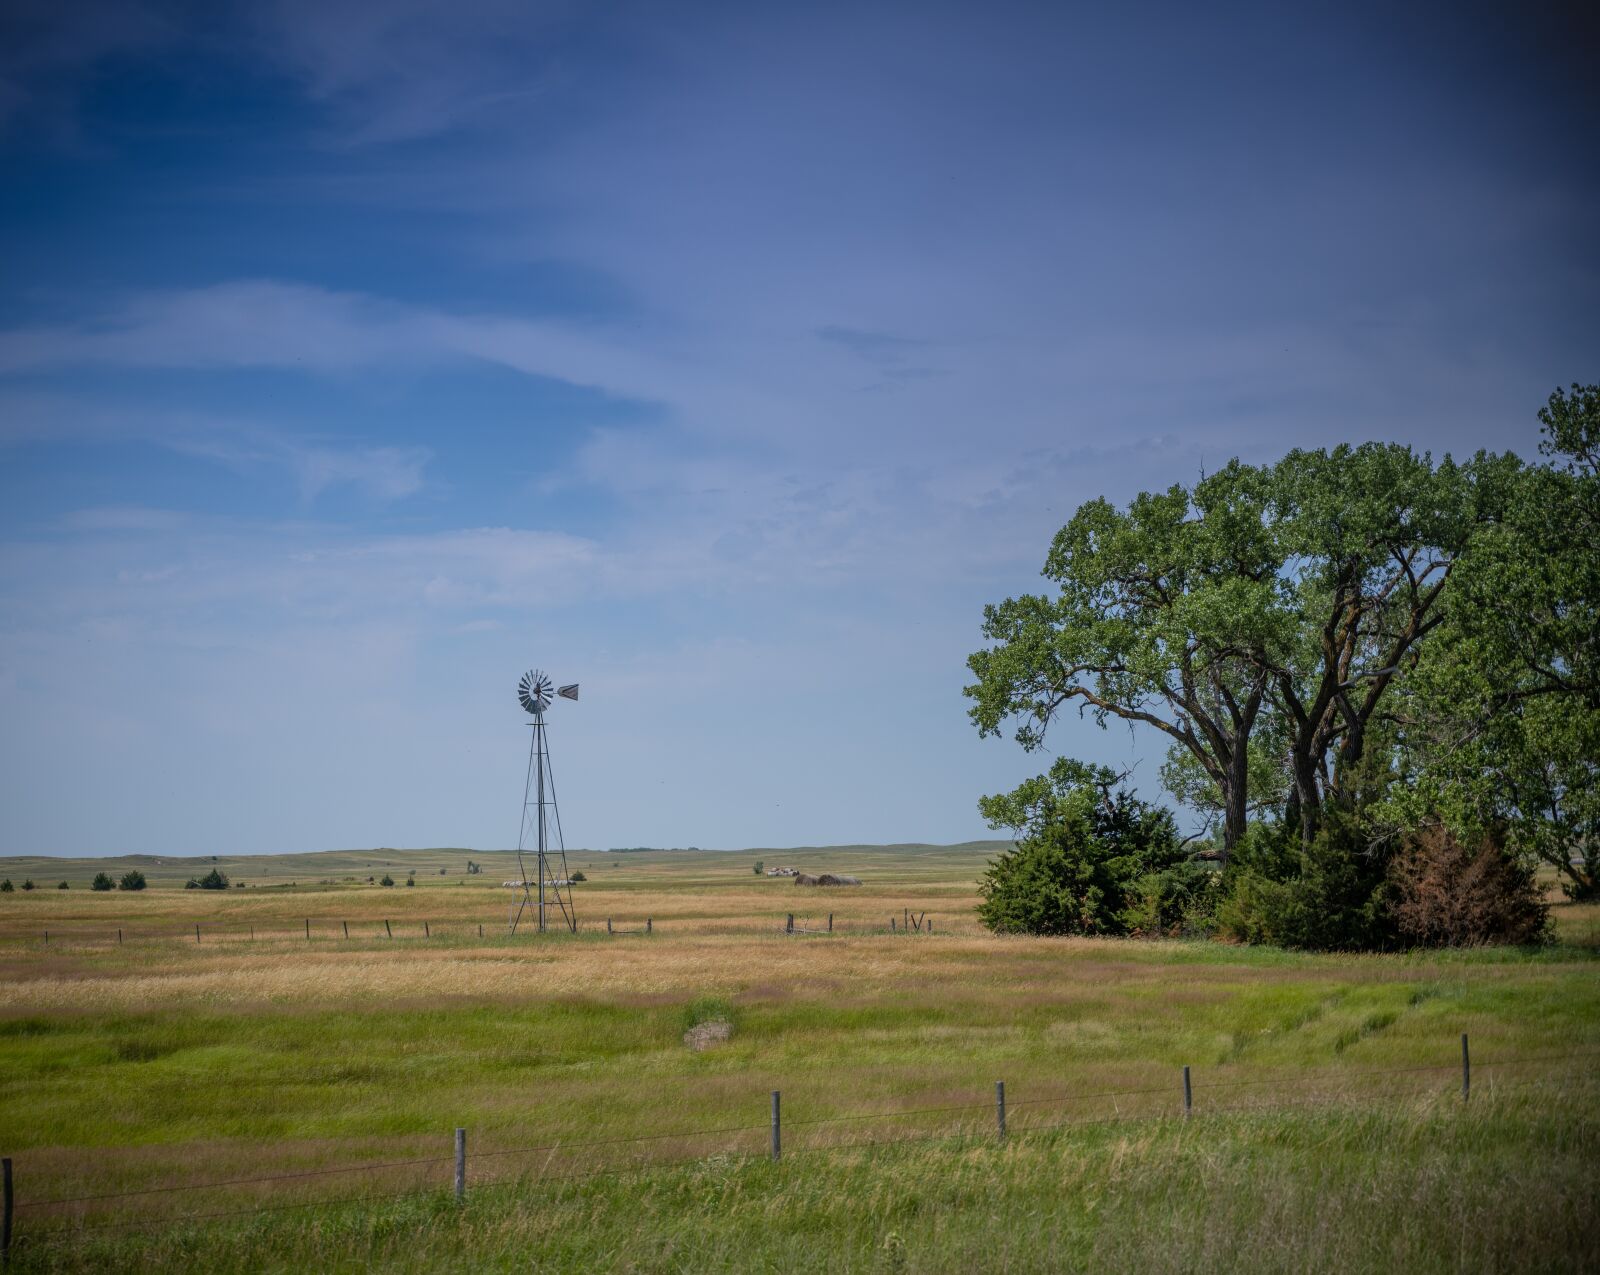 Nikon Z7 sample photo. Windmill, sky, landscape photography